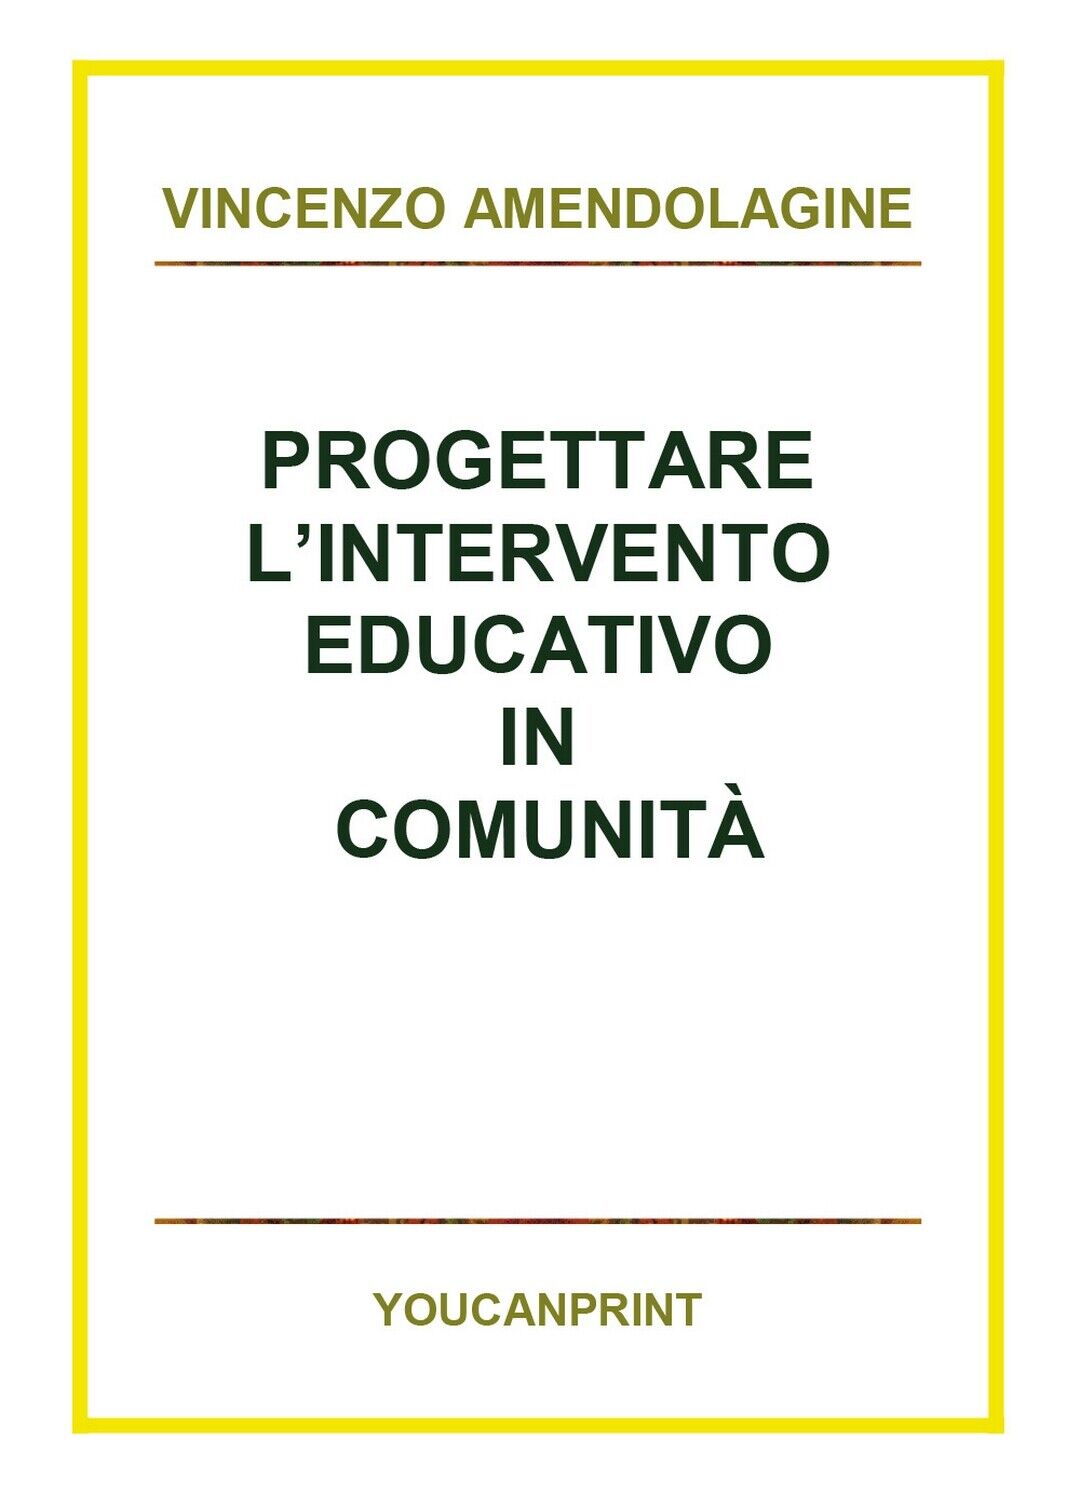 Progettare L'intervento educativo in comunit? - Vincenzo Amendolagine,  2018,  Y